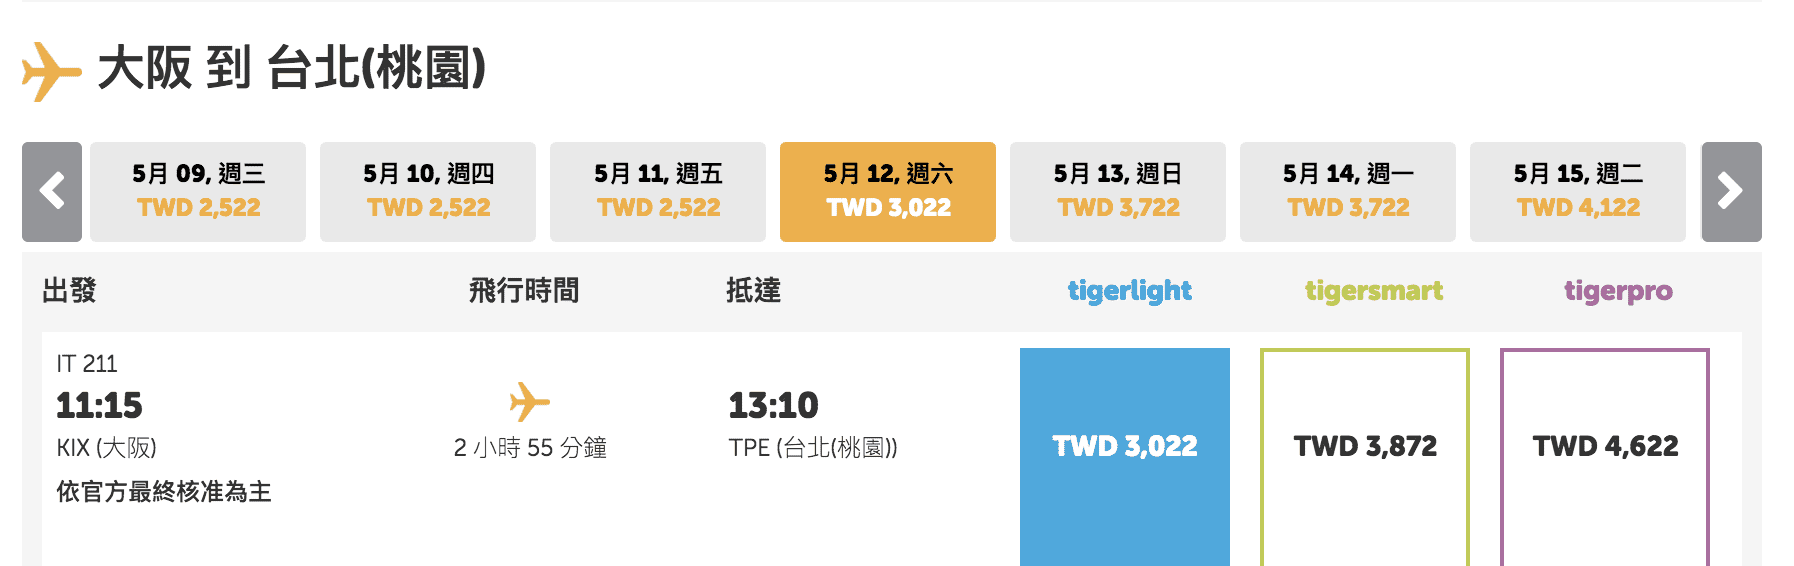 虎航tigerwow特價，可買3/6~6/15的日韓線優惠票價，最低3Ｋ喔！（訂票時間：3/6~3/7)